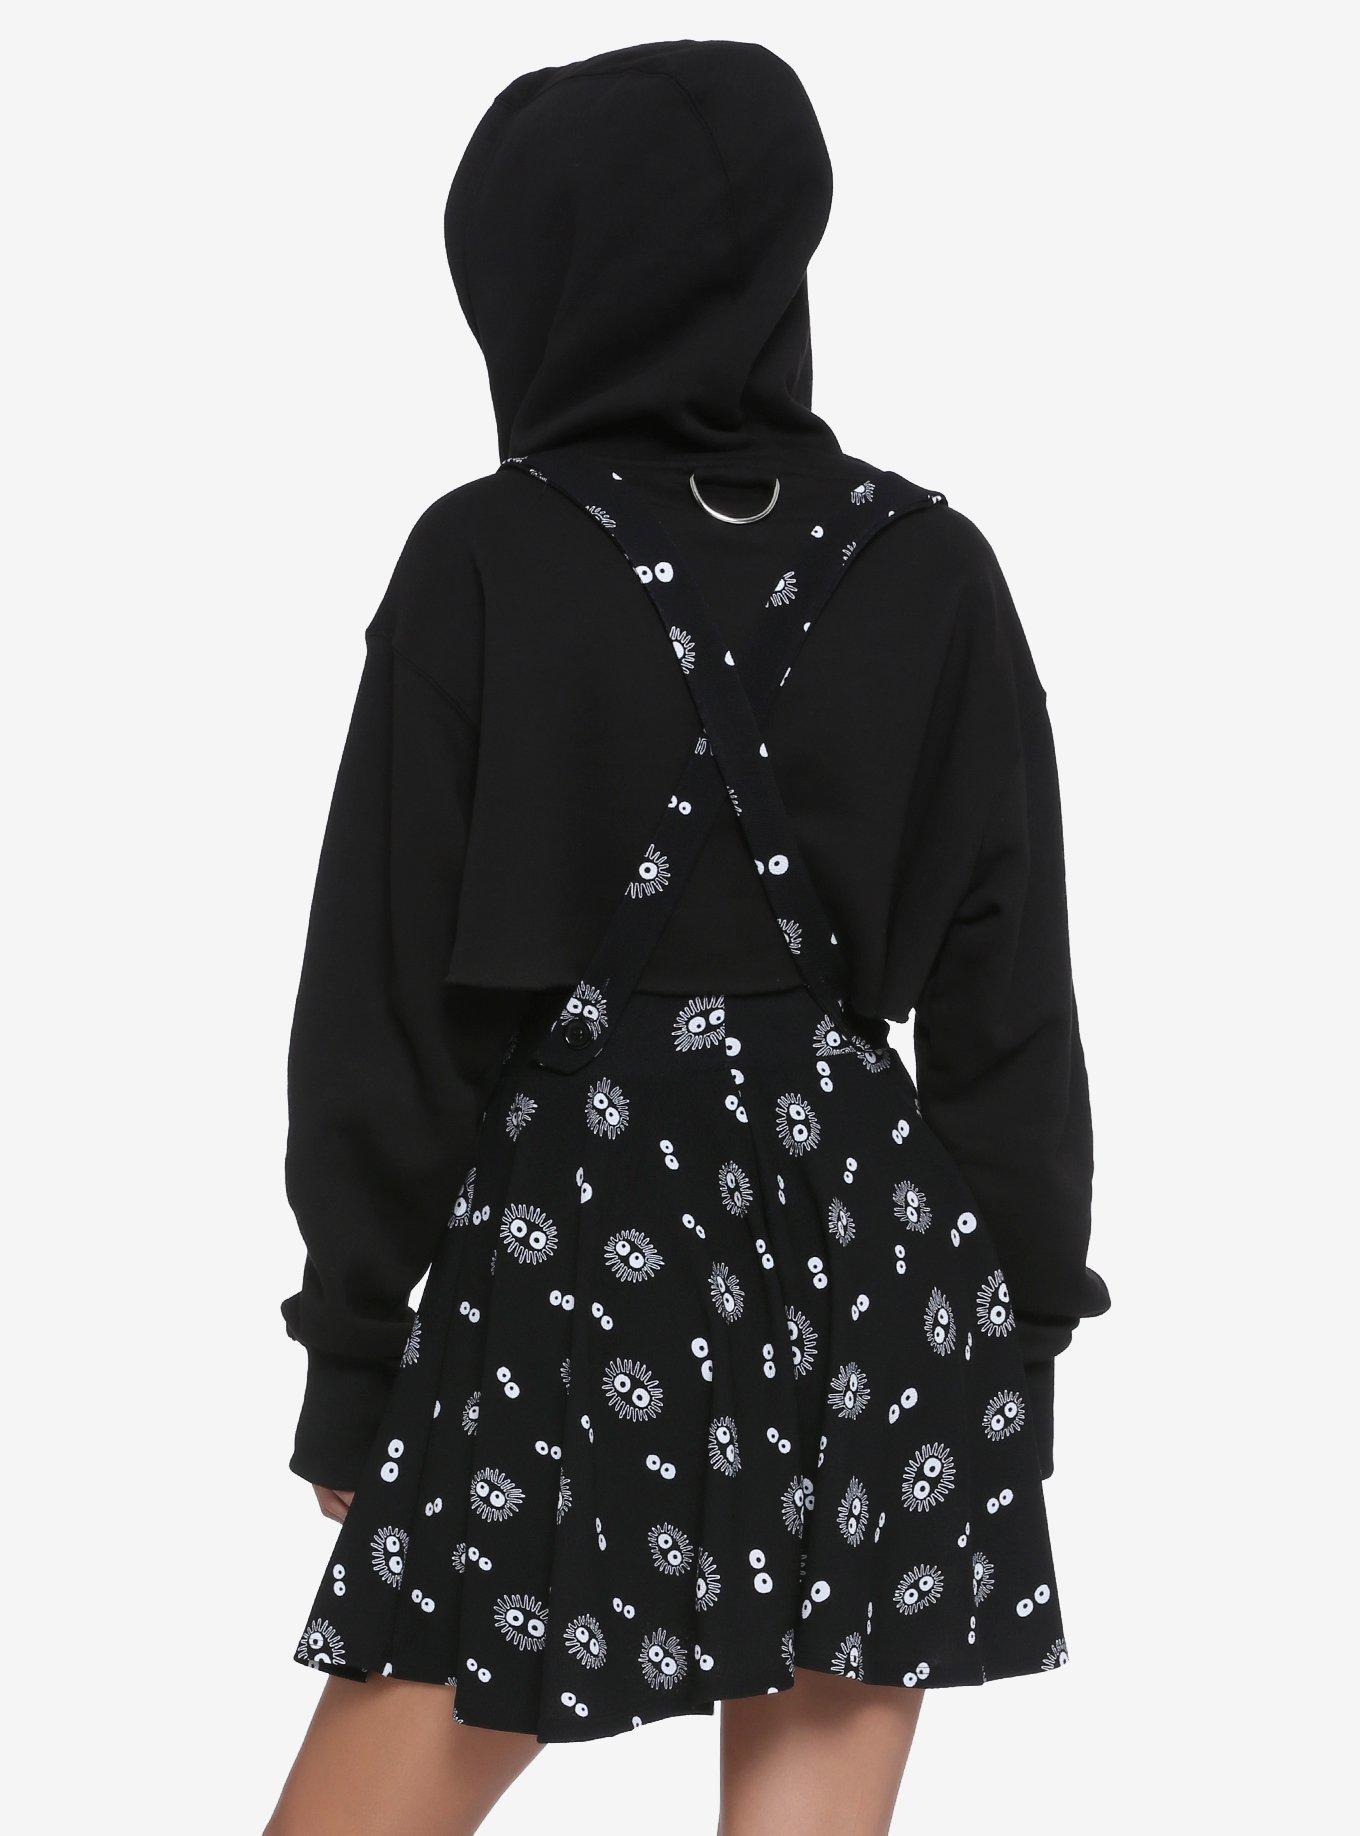 Studio Ghibli Spirited Away Soot Sprite Suspender Skirt, BLACK, alternate